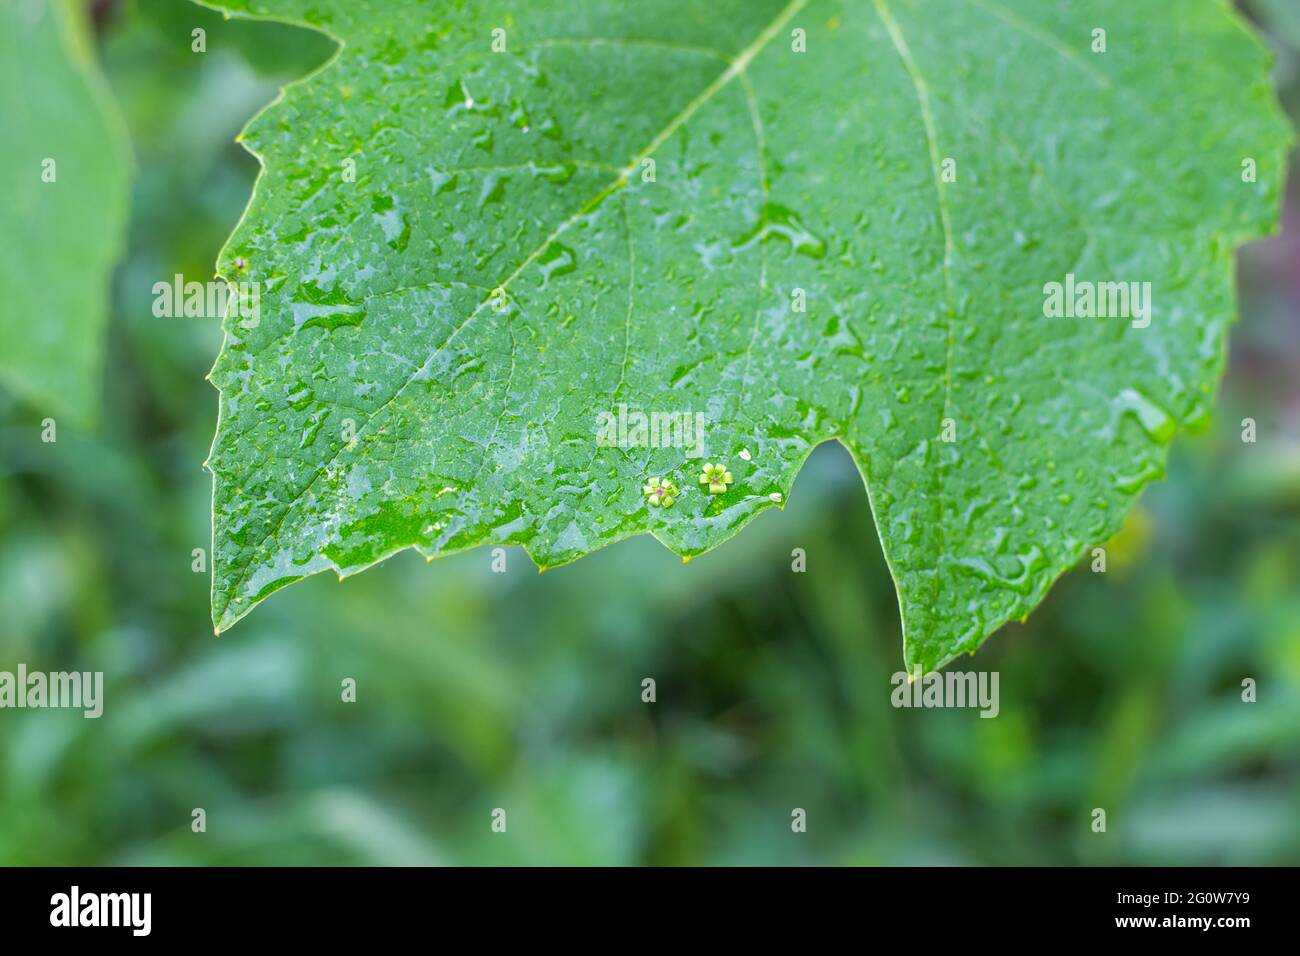 Une feuille de vigne verte, humide sous la pluie, avec de petites fleurs tombées sur la surface. Jardinage et soin des plantes. Banque D'Images